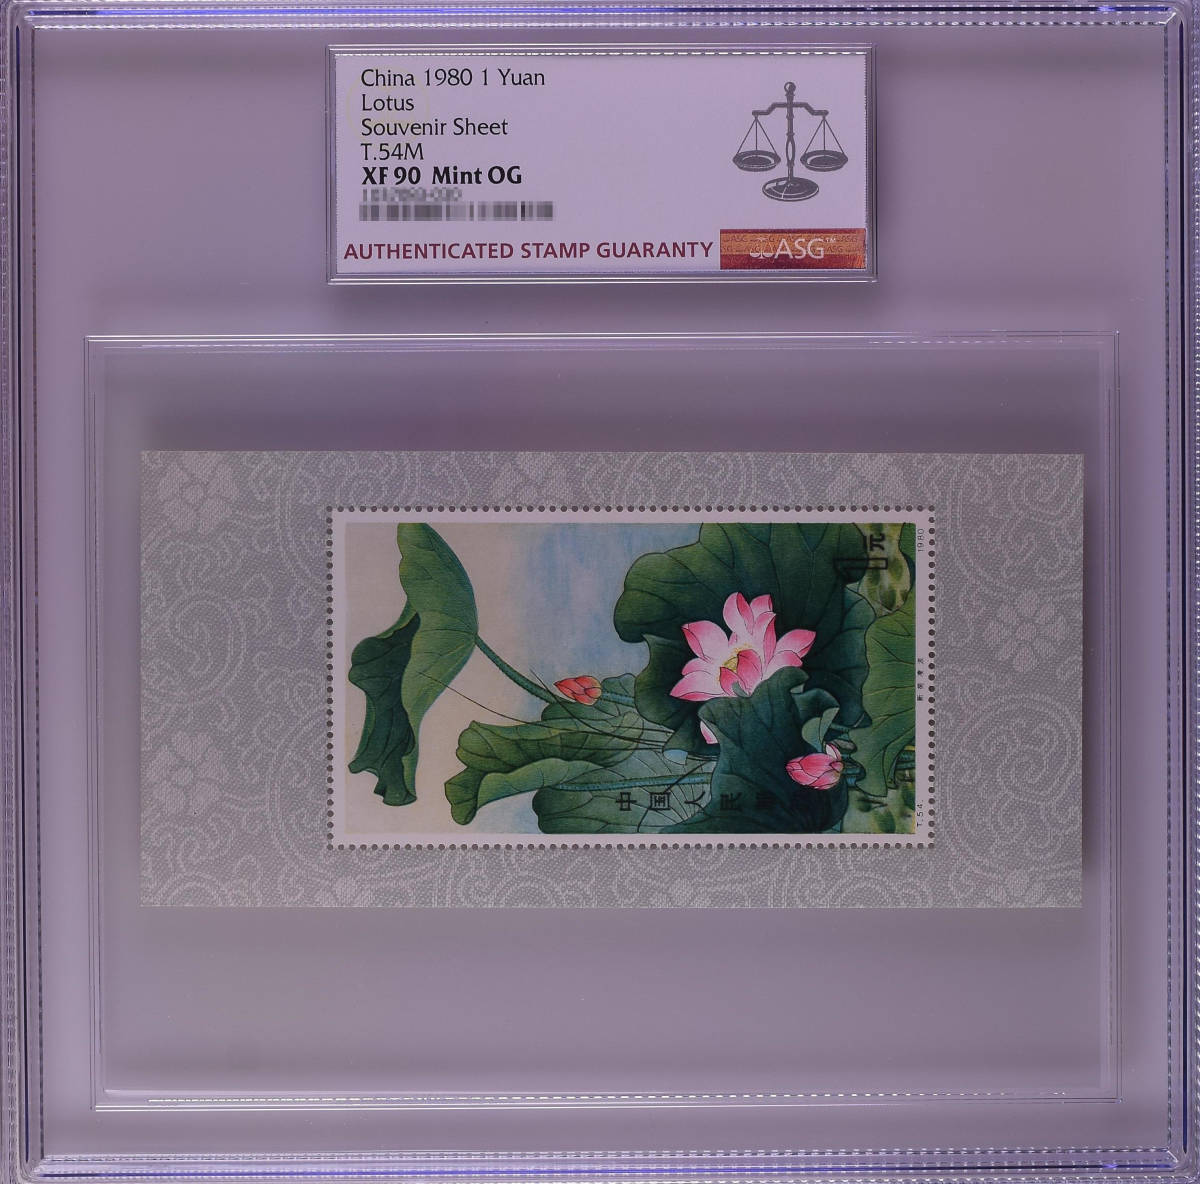 【記念切手】中国切手収蔵『中国人民郵政・ 新荷凌波 1980年（T.54M）』小型シート146mm×70mm ASG XF90 Mint OG 本物希少品 Z81_画像1